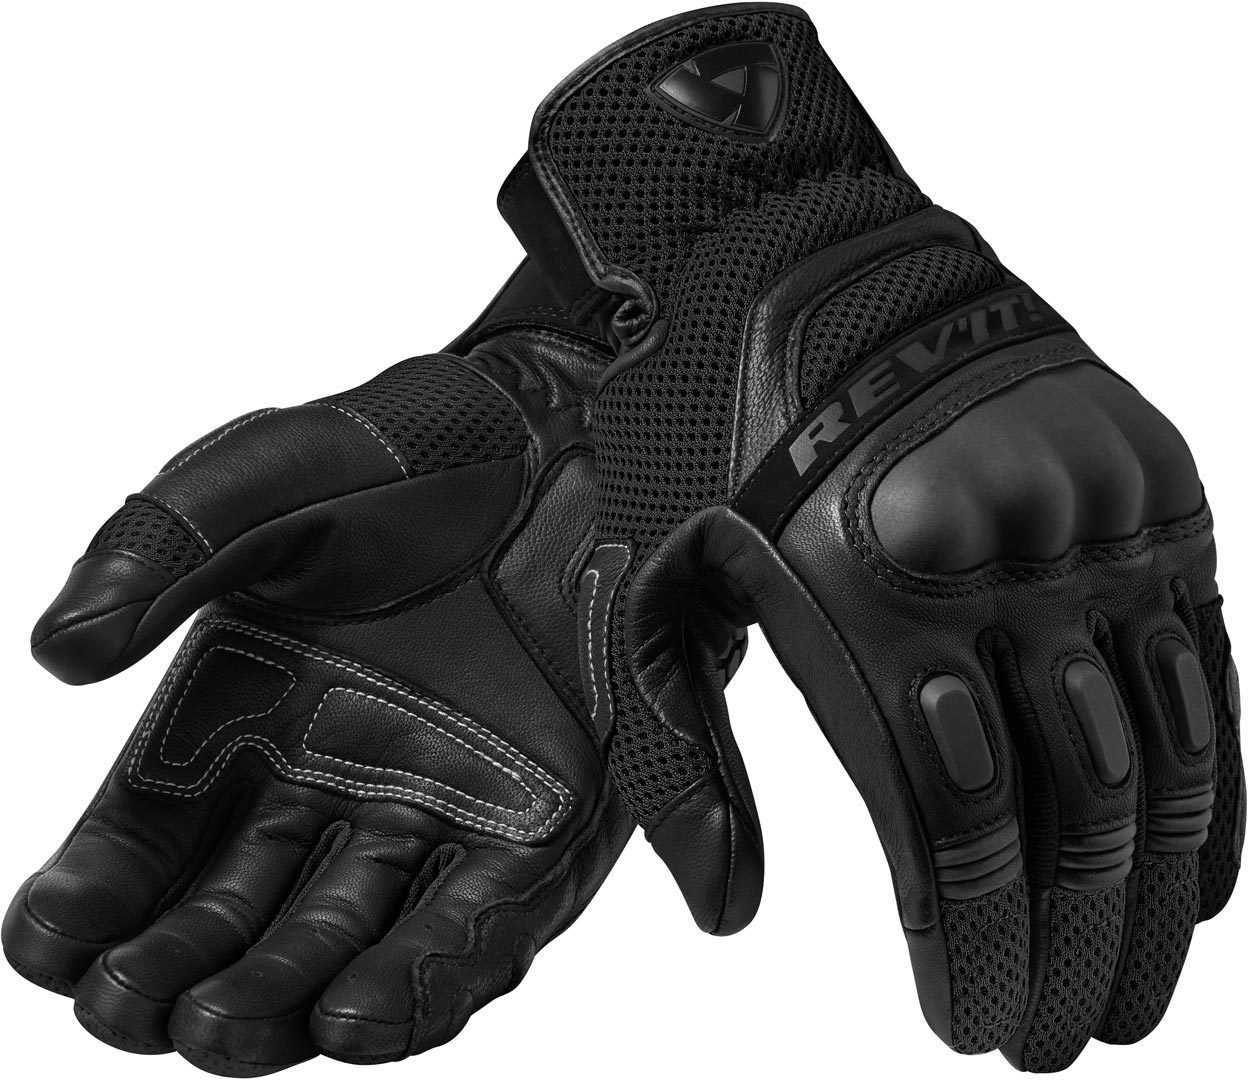 Revit Motorradhandschuhe Handschuhe 3 Black/Black Motocross Dirt